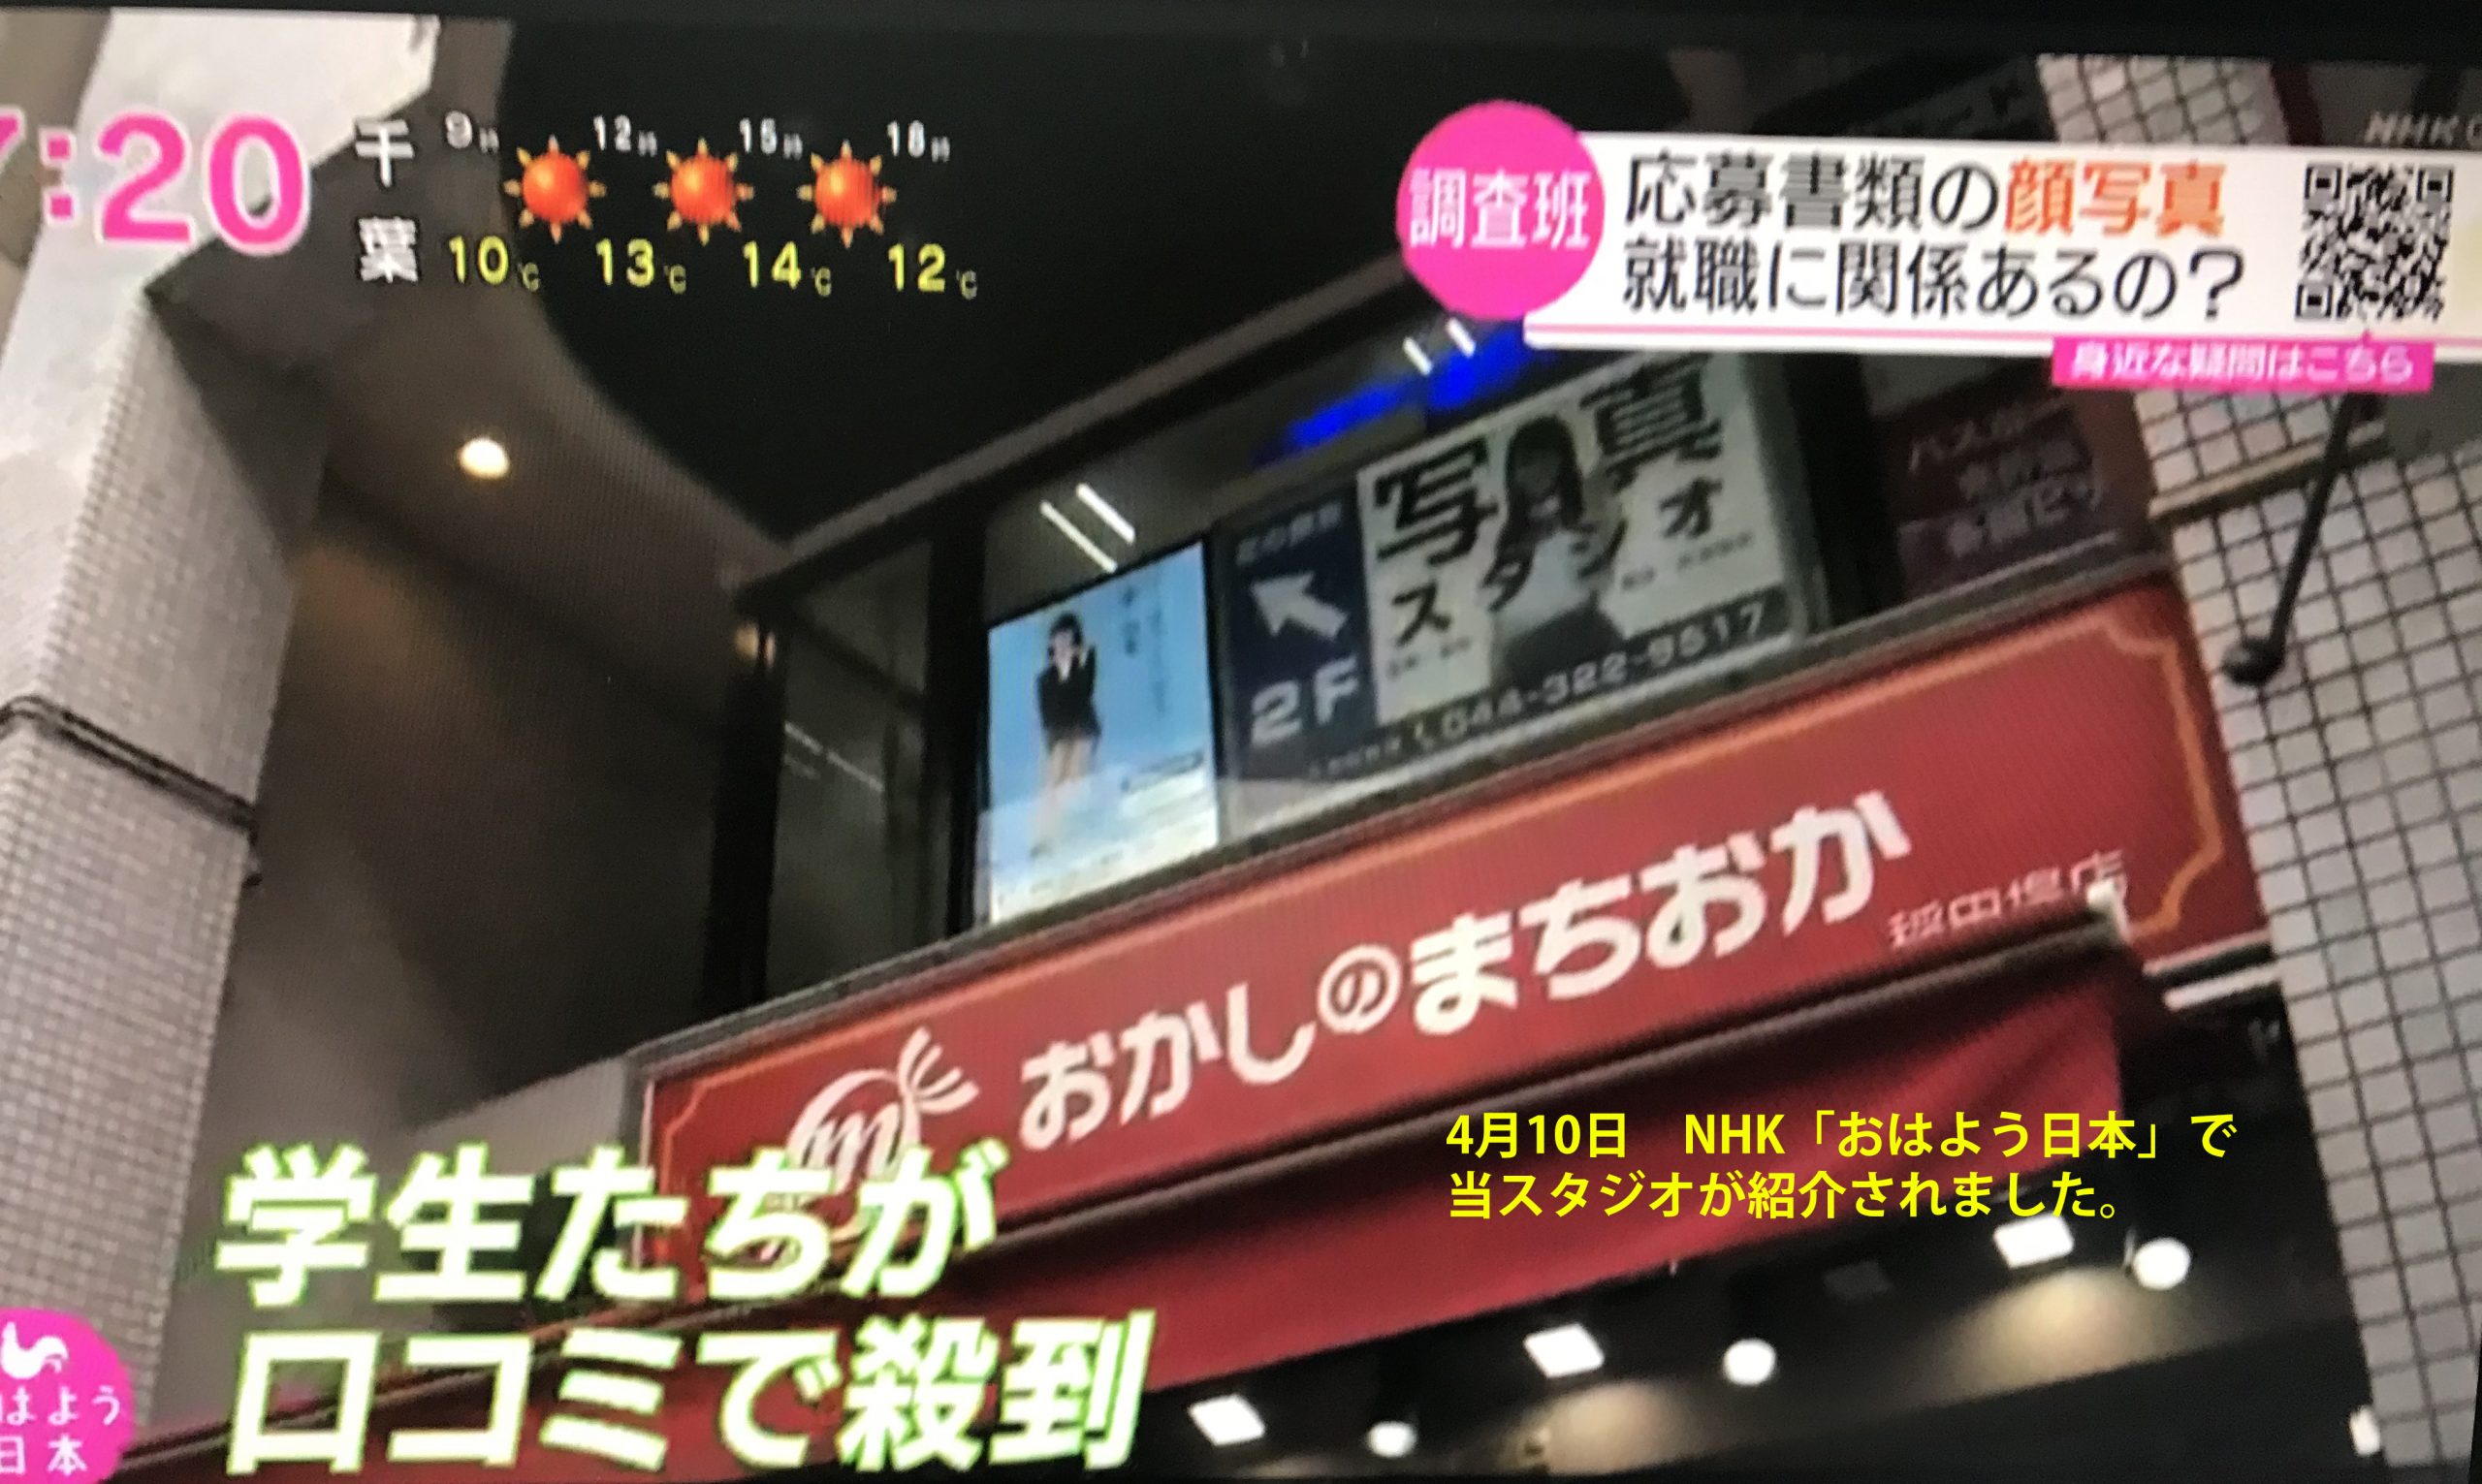 「応募書類の顔写真 就職に関係あるの？」NHK取材協力で、リクルートフォトスタジオが「学生たちが口コミで殺到」と紹介されました。